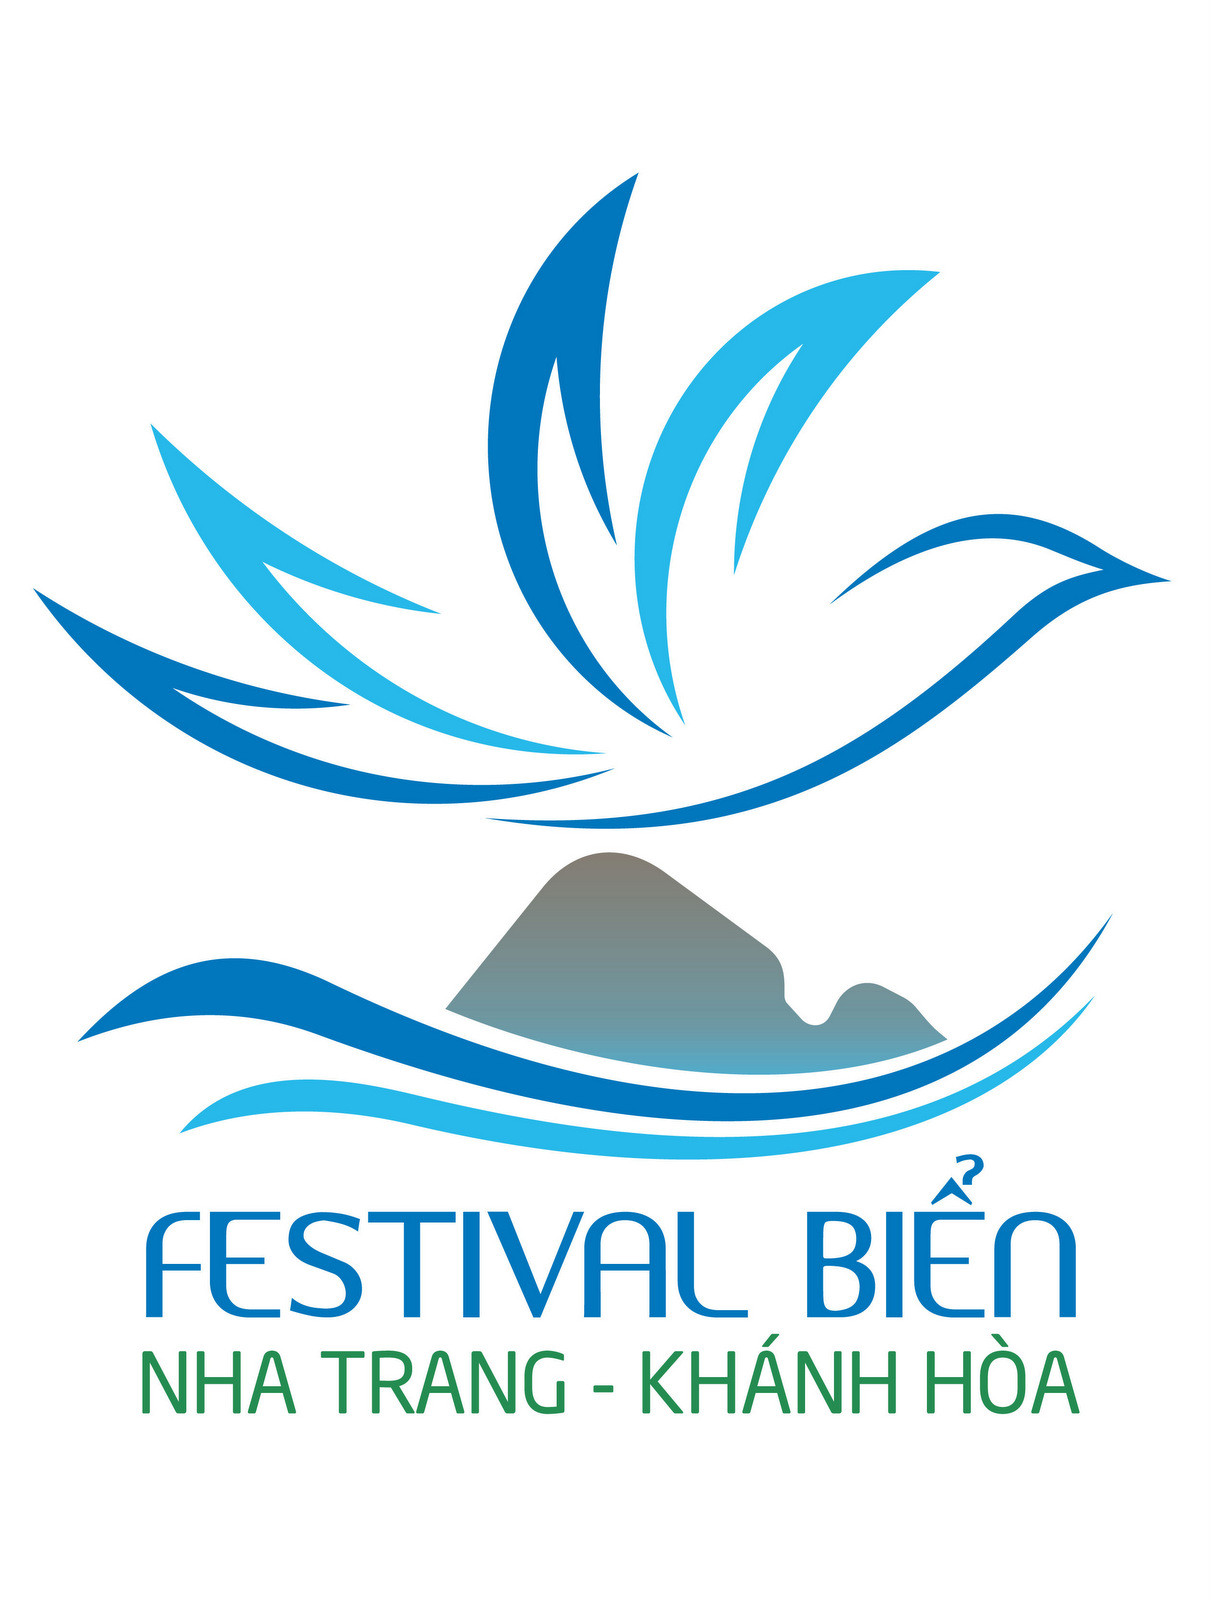 Tác phẩm được đề nghị trao giải Nhất cuộc thi Logo Festival Biển Nha Trang - Khánh Hòa